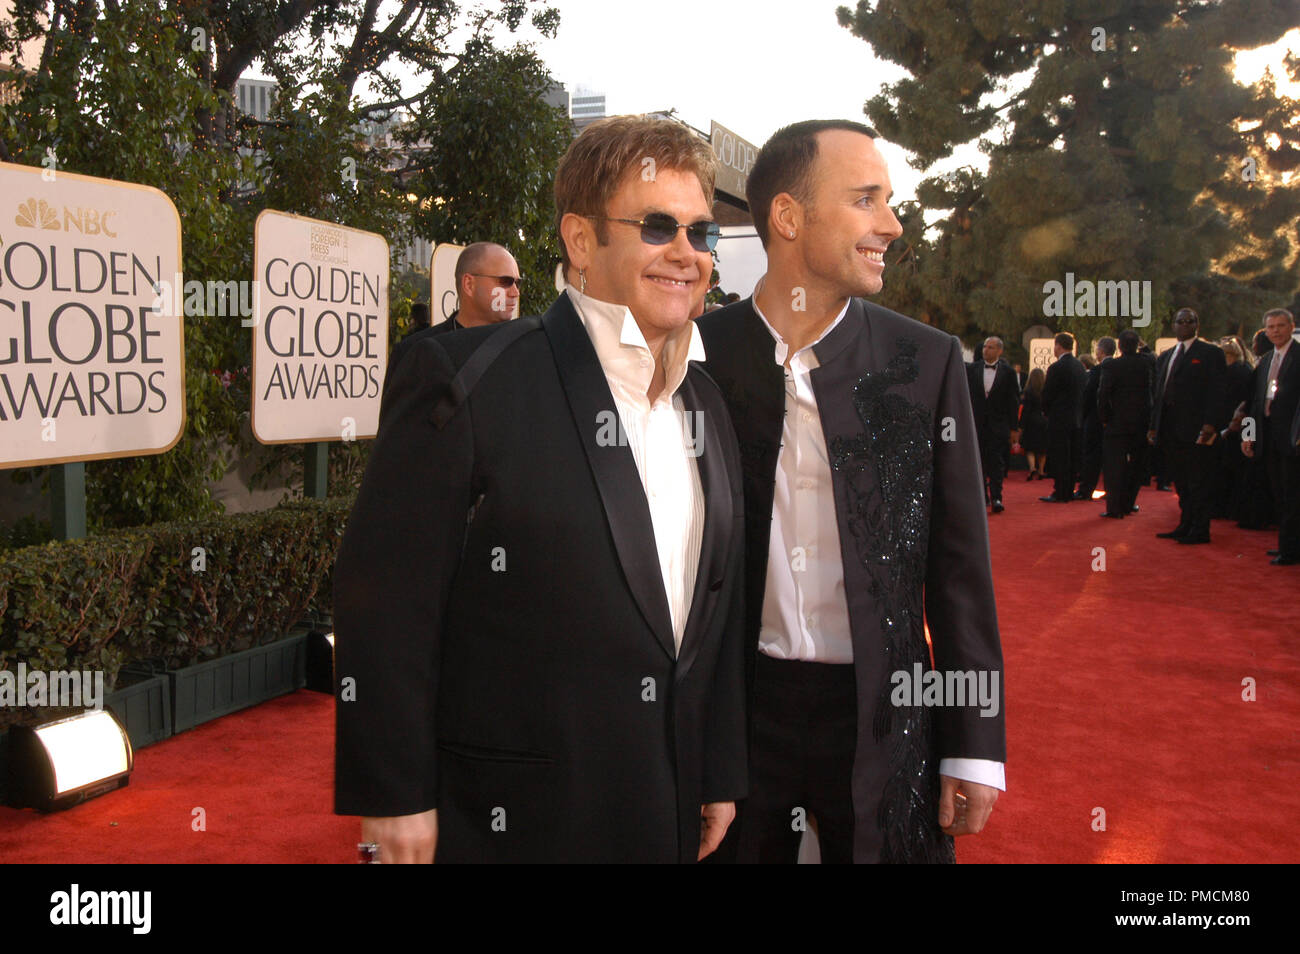 Anreise auf der 61. jährlichen "Golden Globe Awards" 01-25-2004 Elton John und David versorgen, gehalten im Beverly Hilton Hotel in Beverly Hills, CA. Datei Referenz Nr. 1079 086 PLX für redaktionelle Verwendung Stockfoto